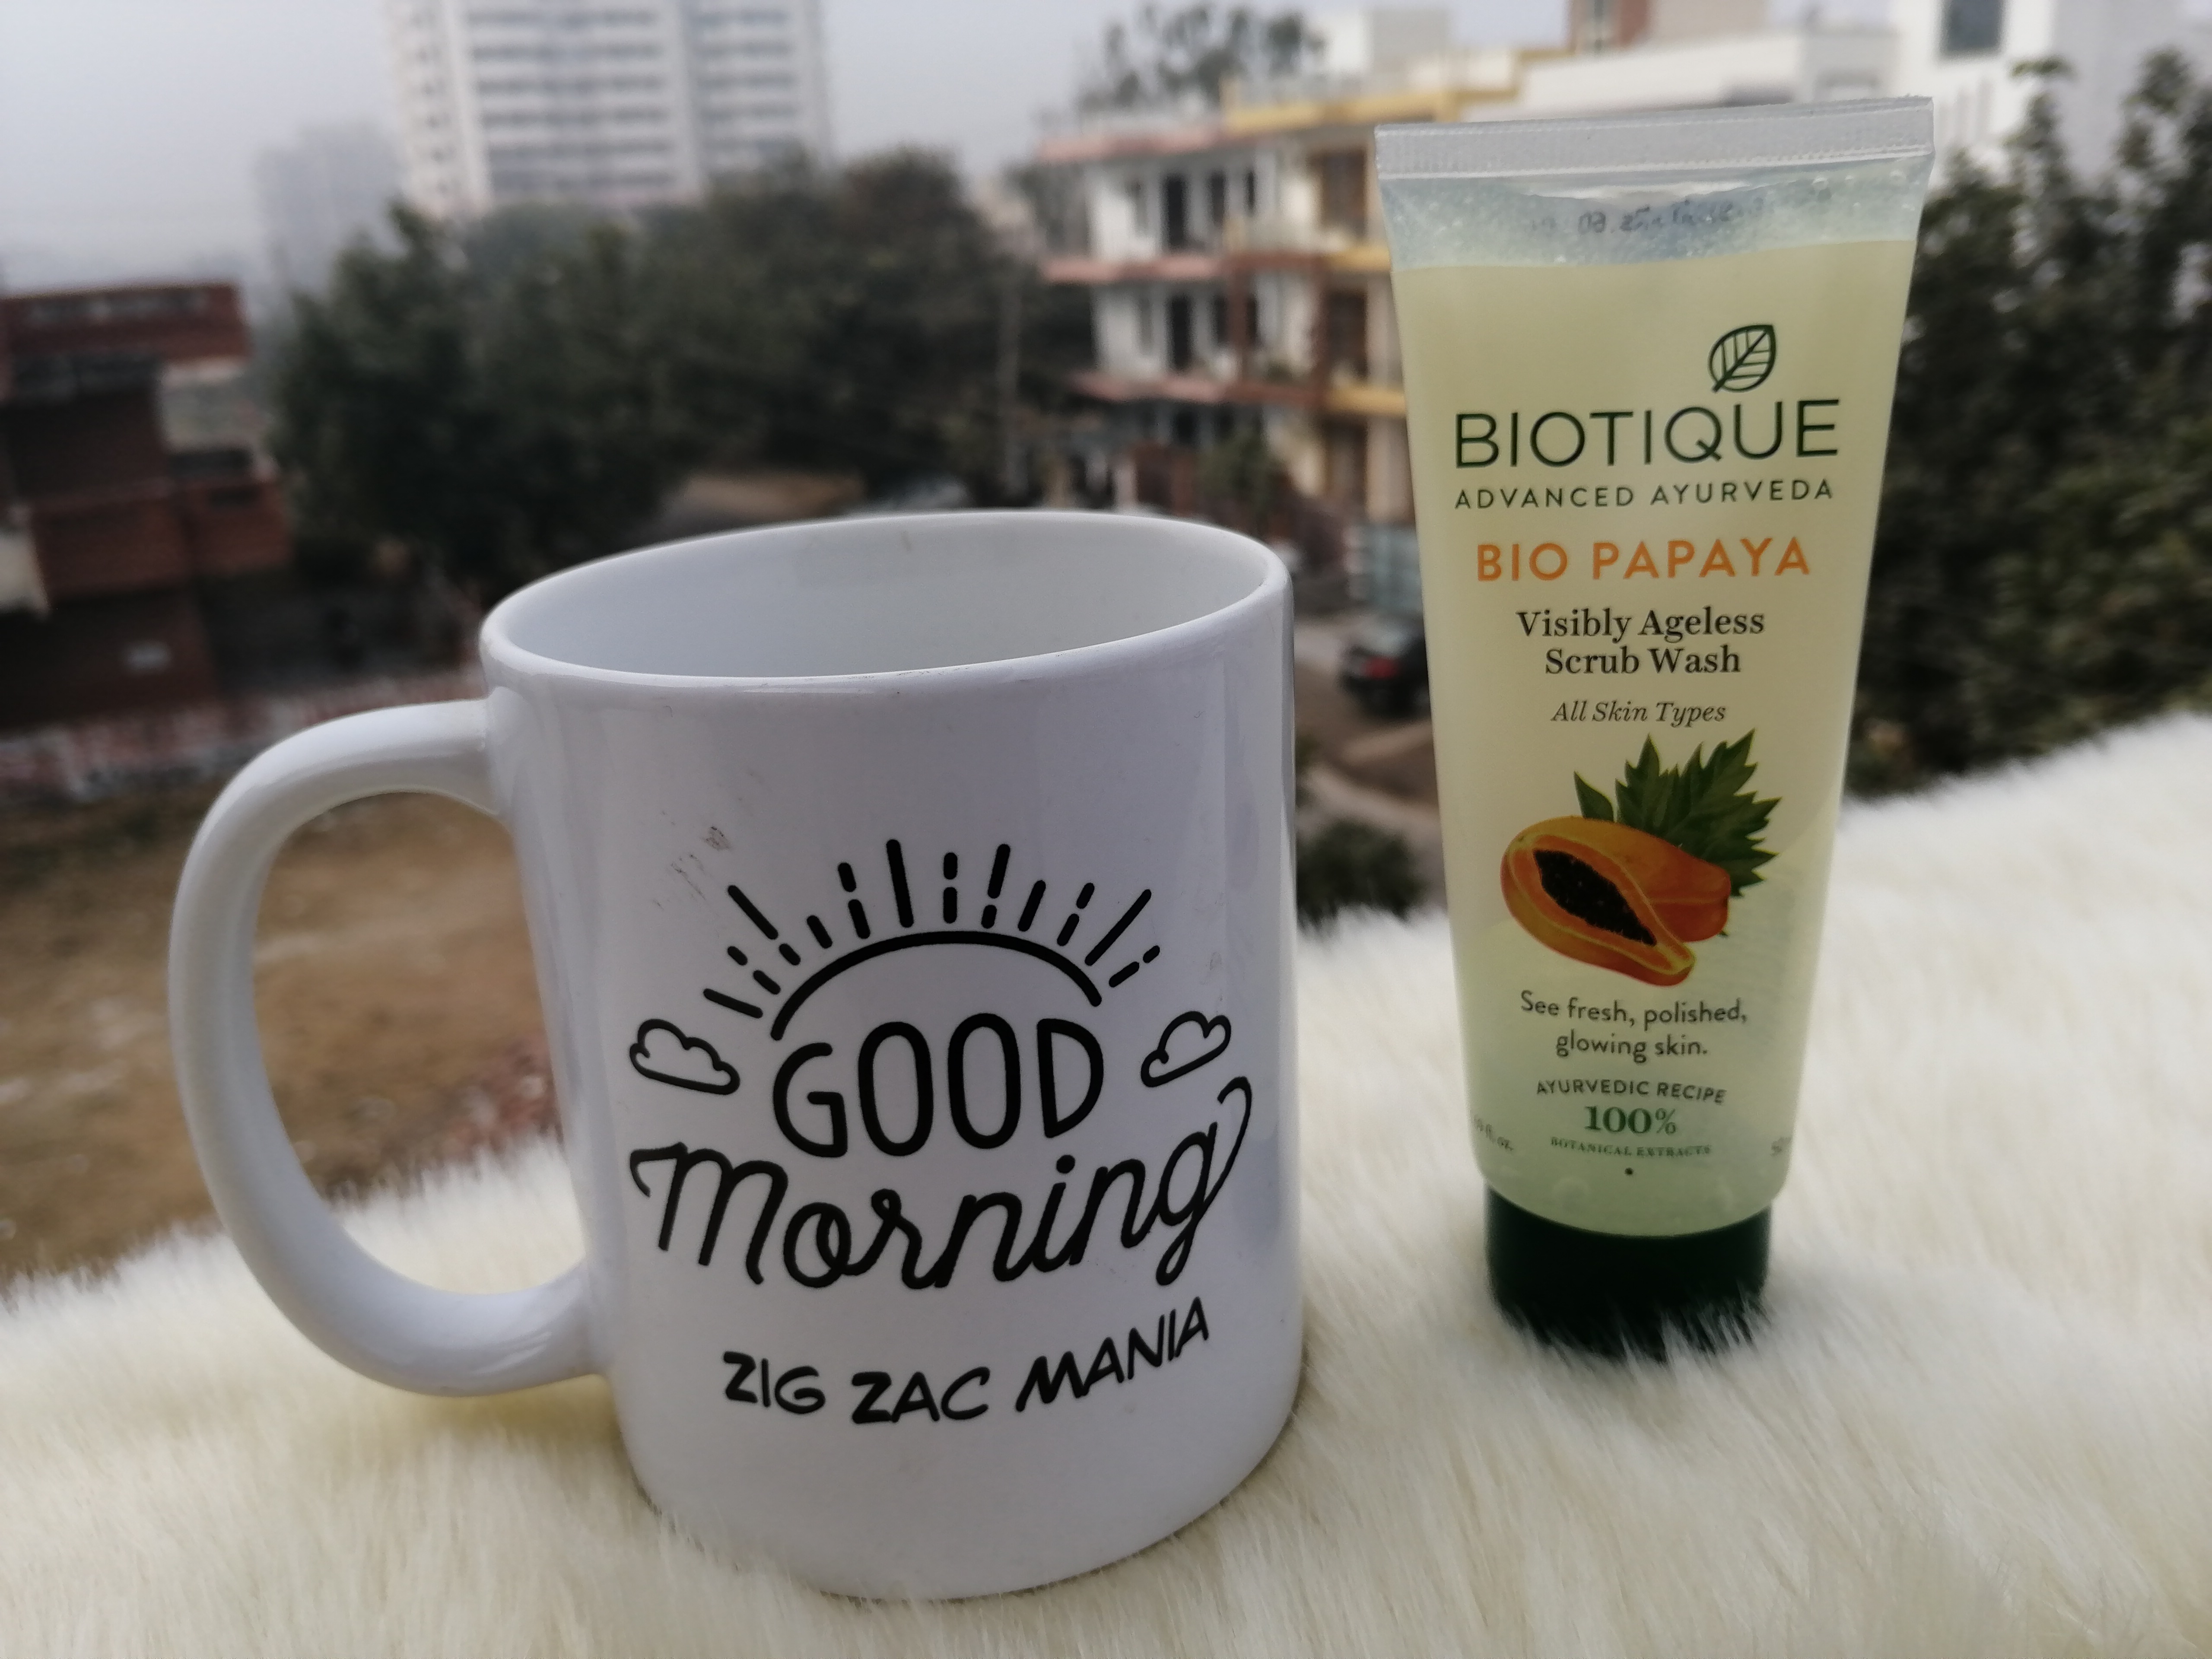 Biotique Papaya Visibly Ageless Scrub Wash| Review